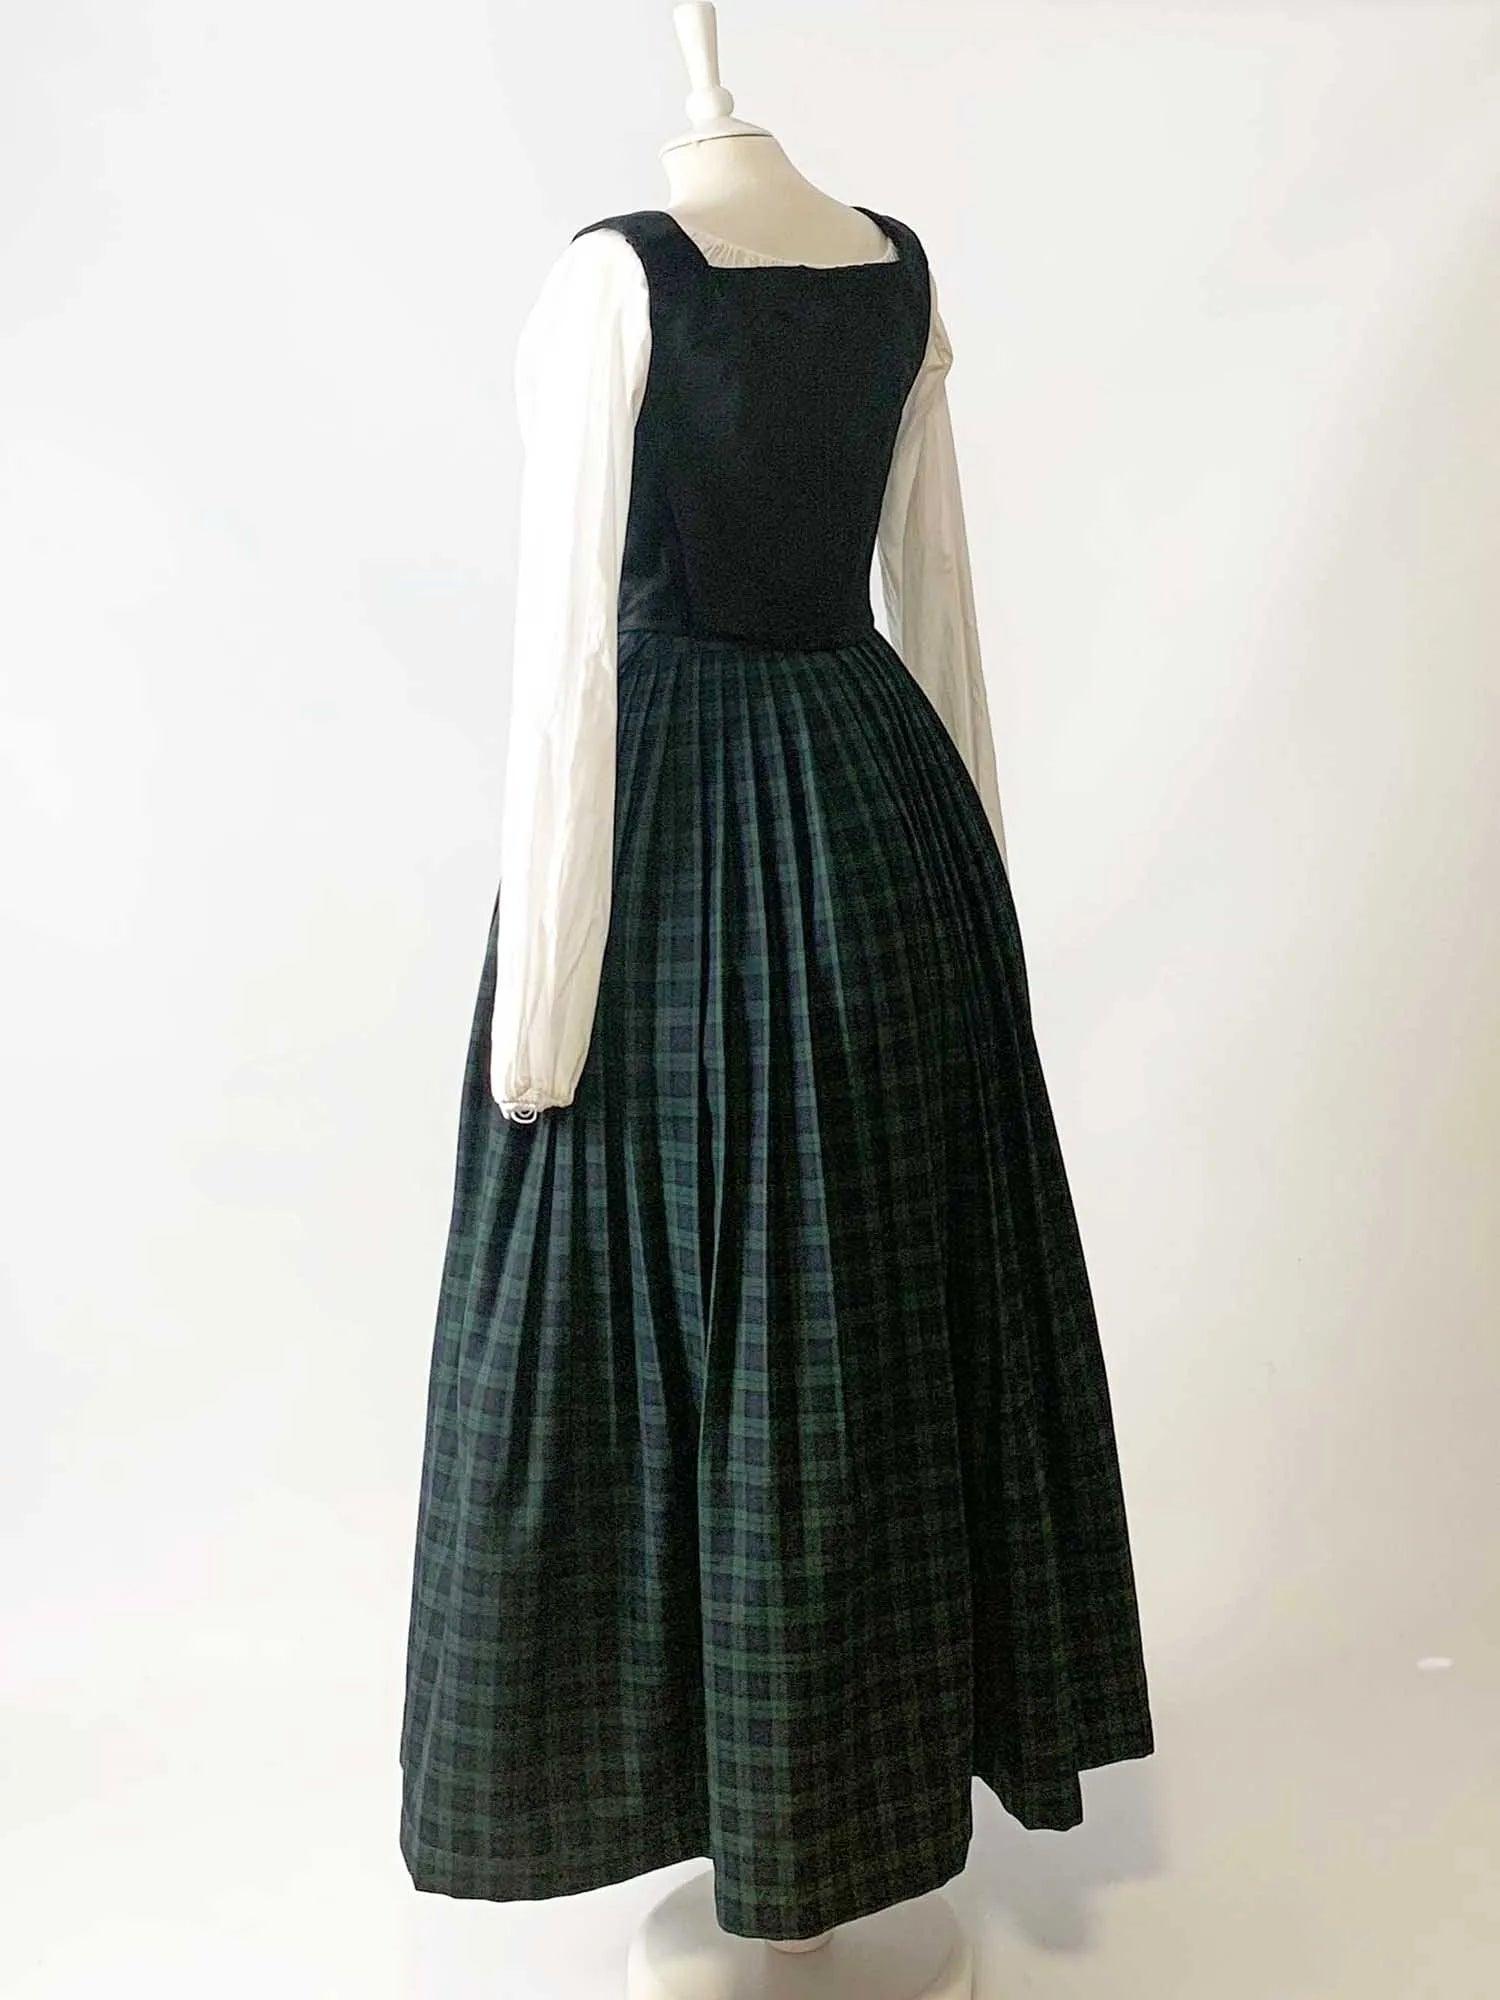 ANN, Renaissance Costume in Black Velvet & Black Watch Tartan Skirt - Atelier Serraspina